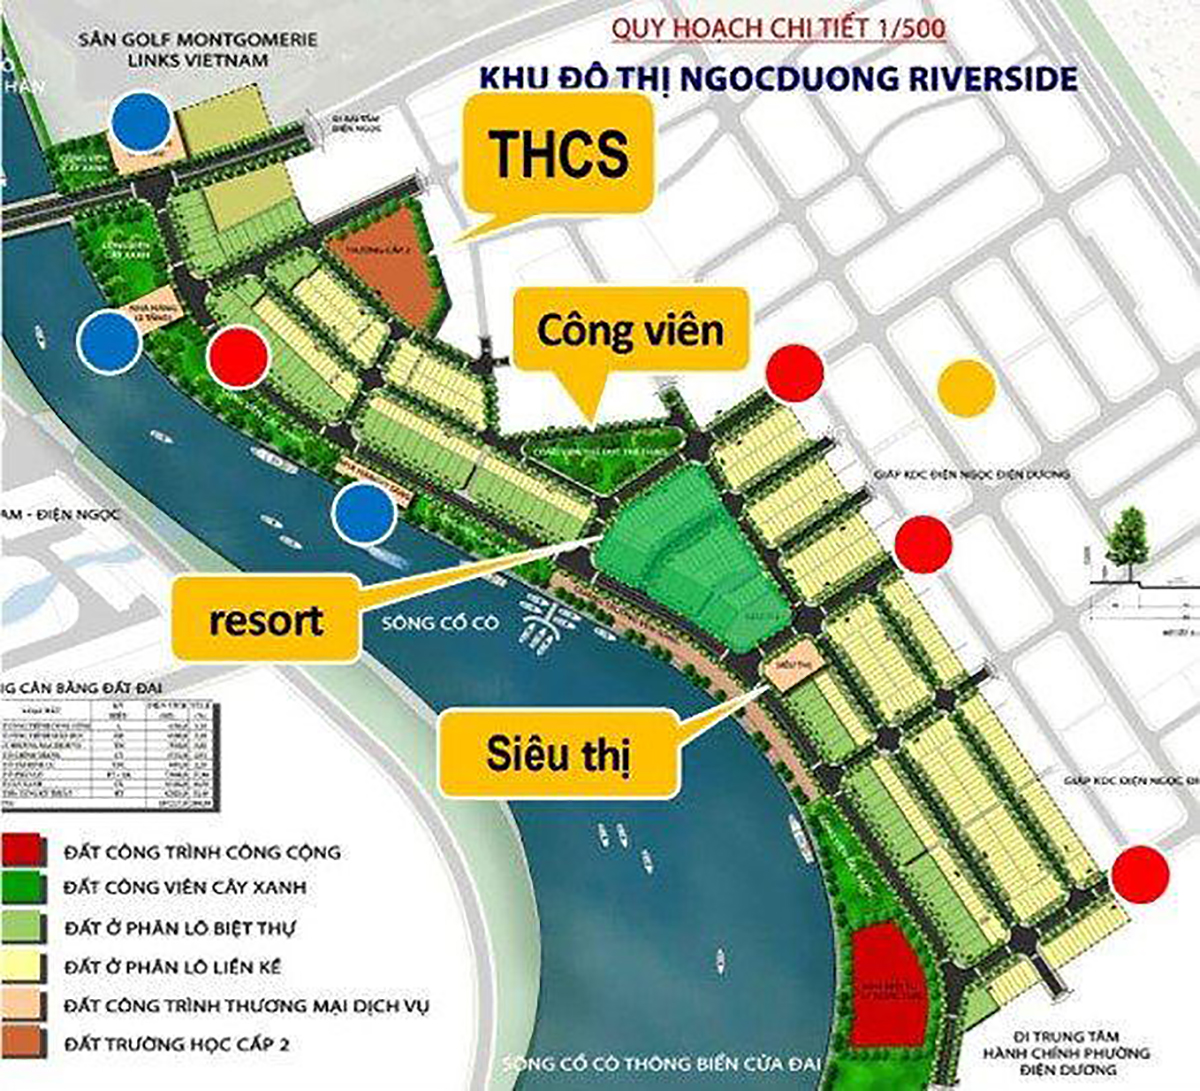 Quy hoạch chi tiết 1/500 dự án Ngọc Dương bên sông Cổ Cò